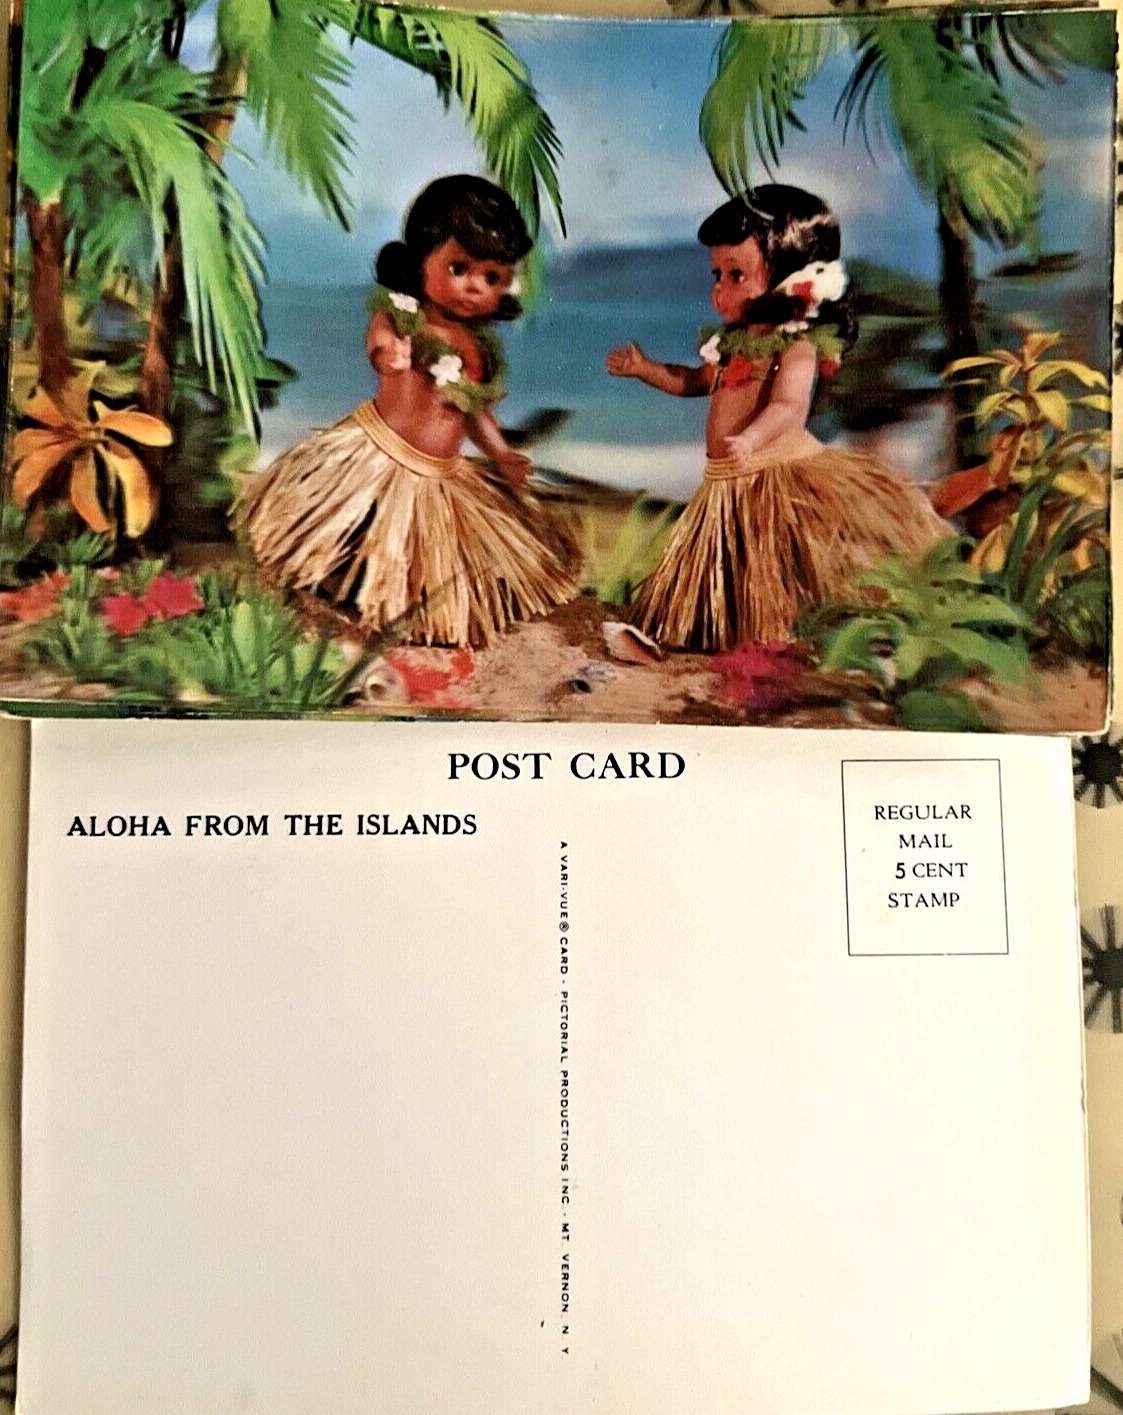 50 Pc Lot Vintage Vari Vue Lenticular Hawaii Aloha Hula Girls Unused Postcards